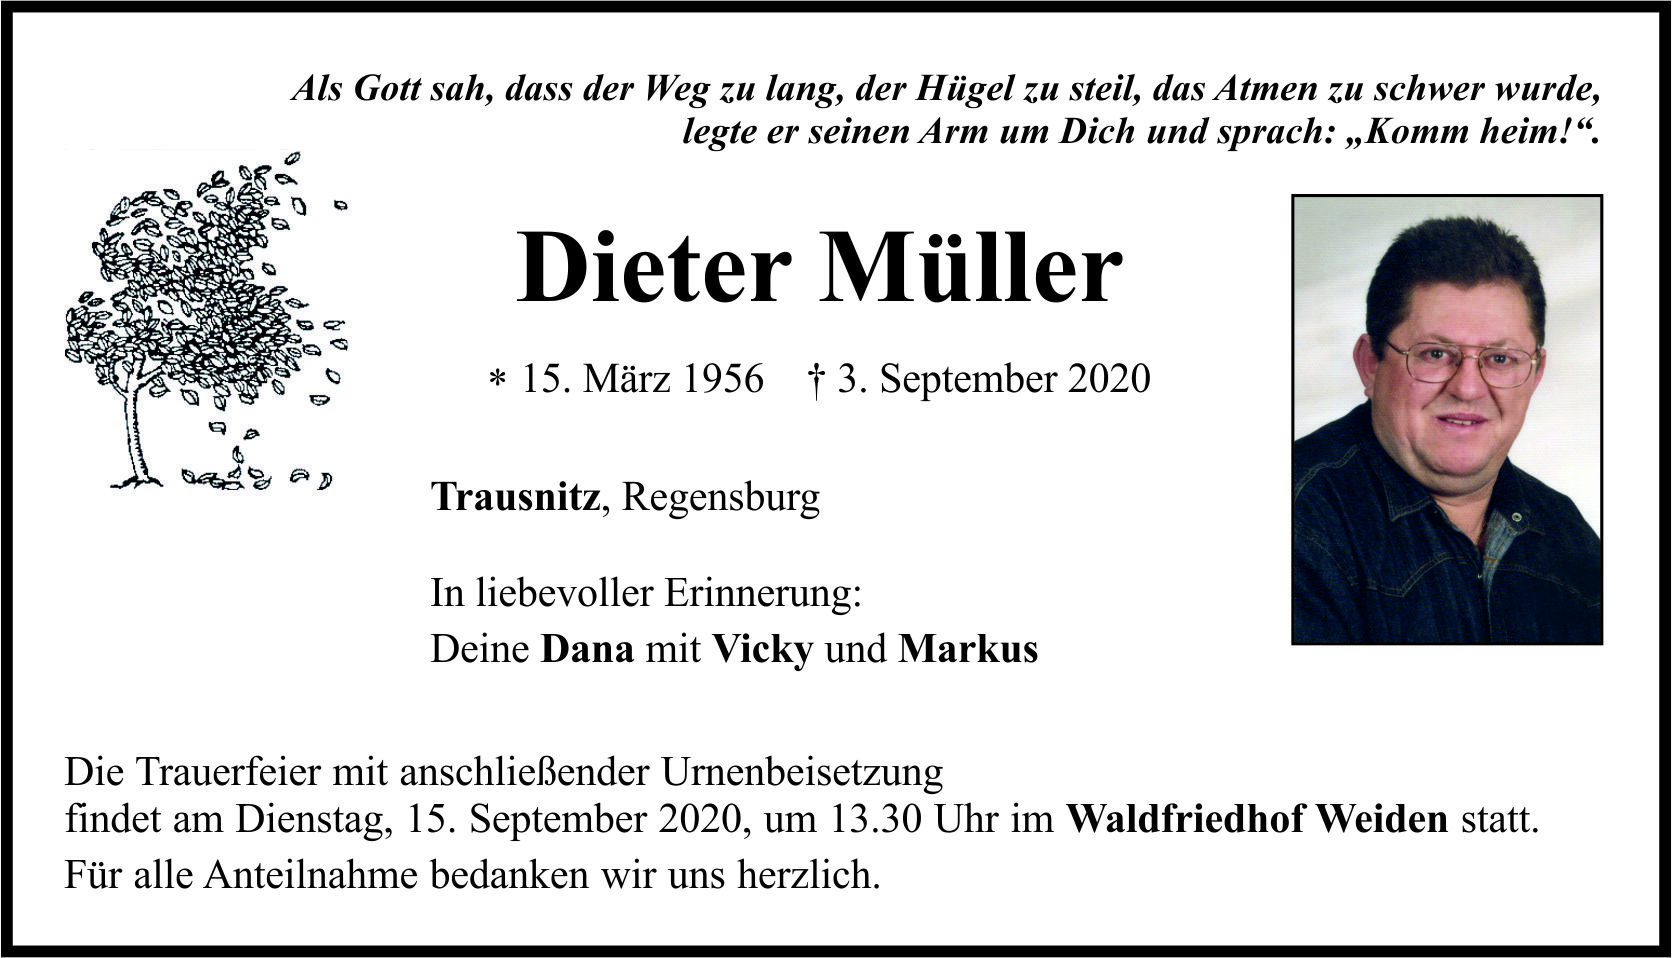 Trauernanzeige Dieter Müller, Trausnitz